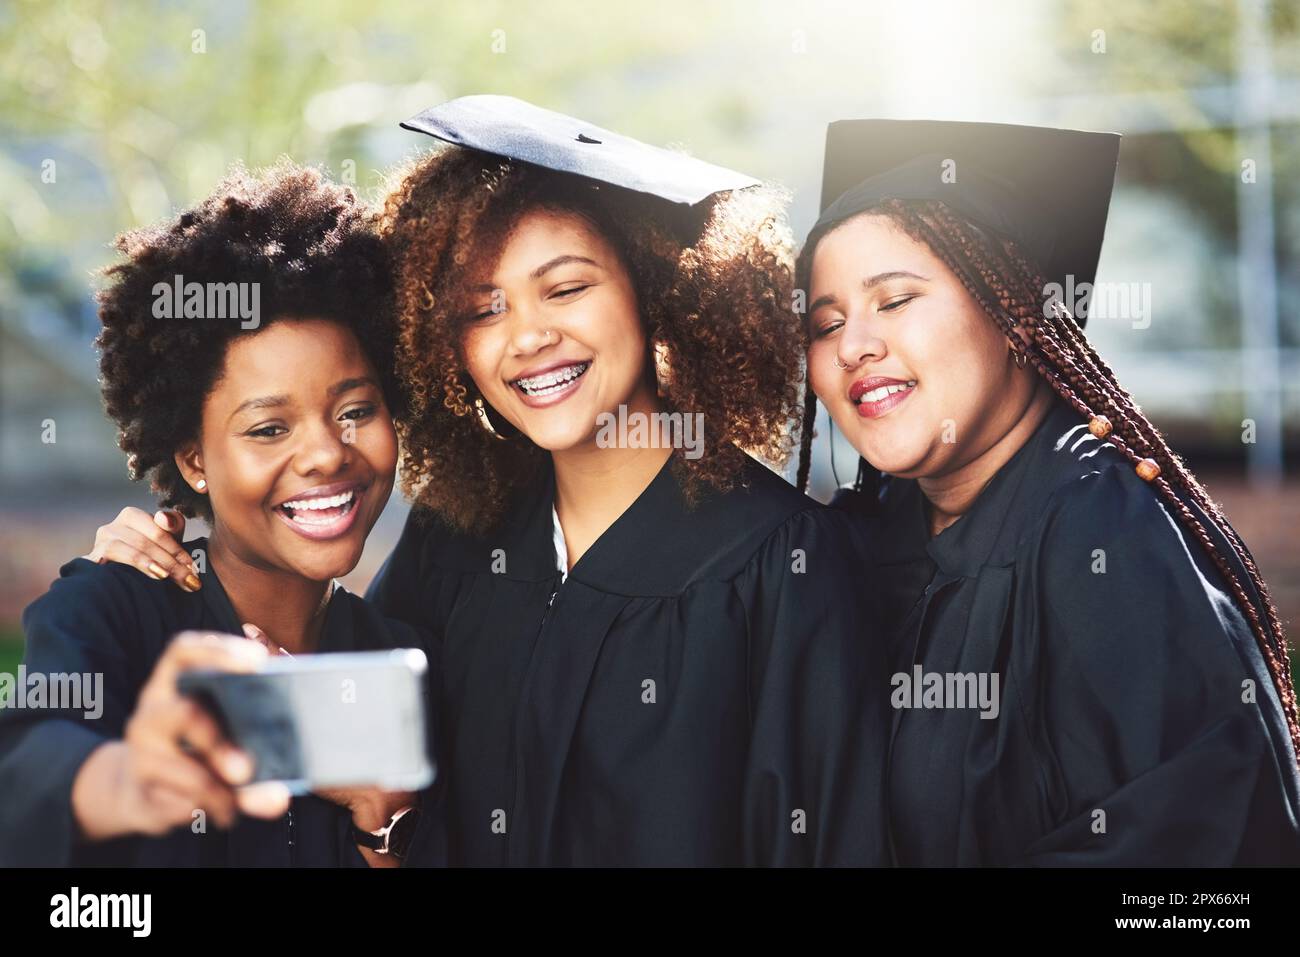 Obiettivi della squadra. tre studenti che prendono un selfie il giorno della laurea Foto Stock